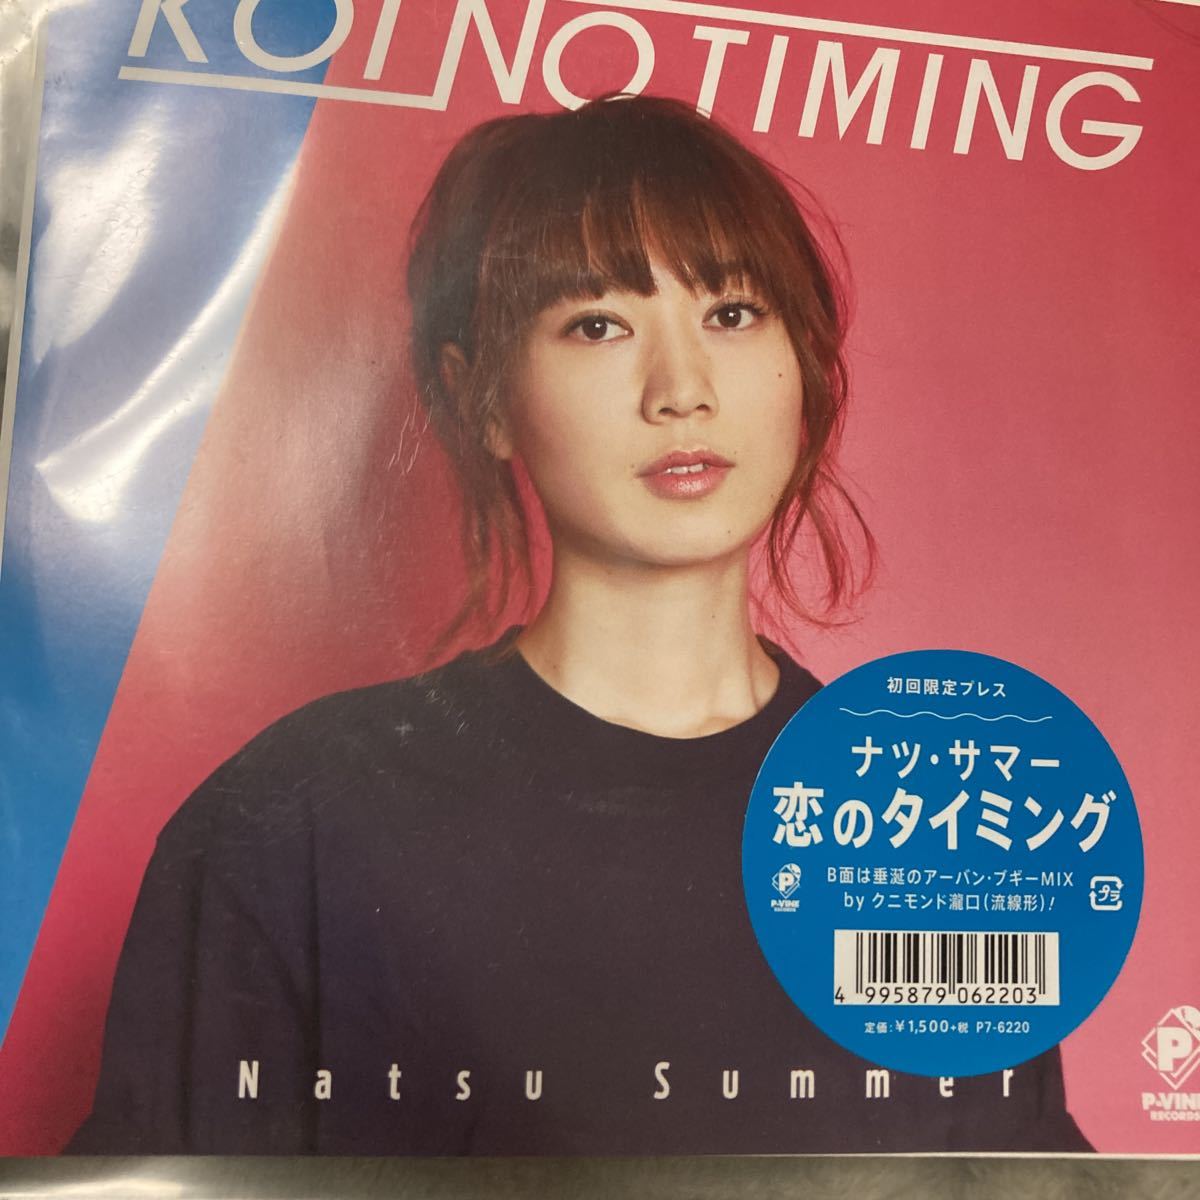 即決 ナツサマー Natsu Summer 恋のタイミング レコード 限定盤 新品未開封